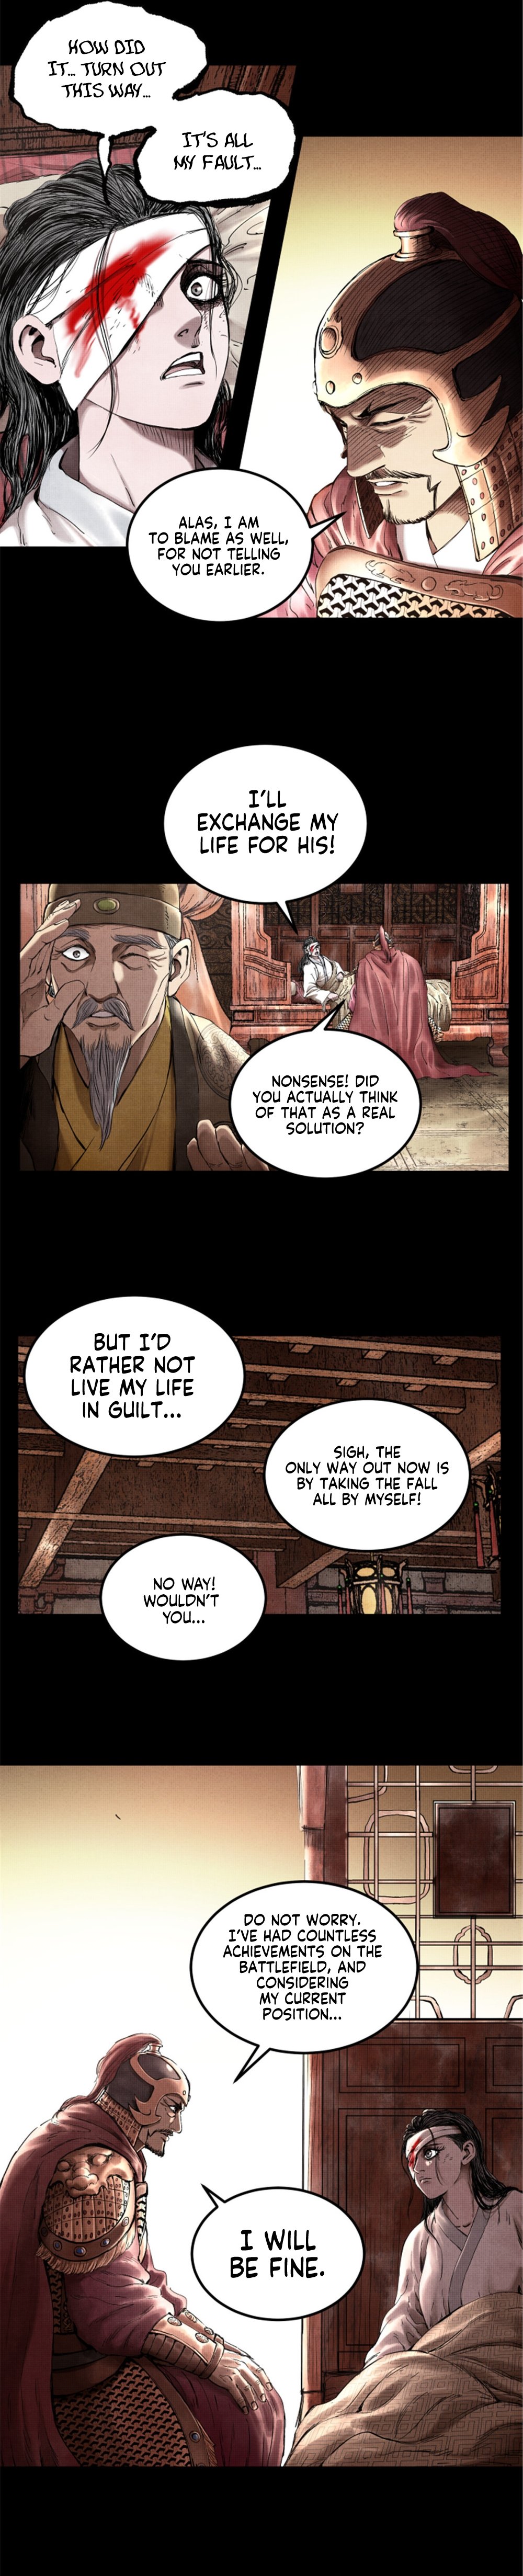 Lu Bu’S Life Story - Page 2